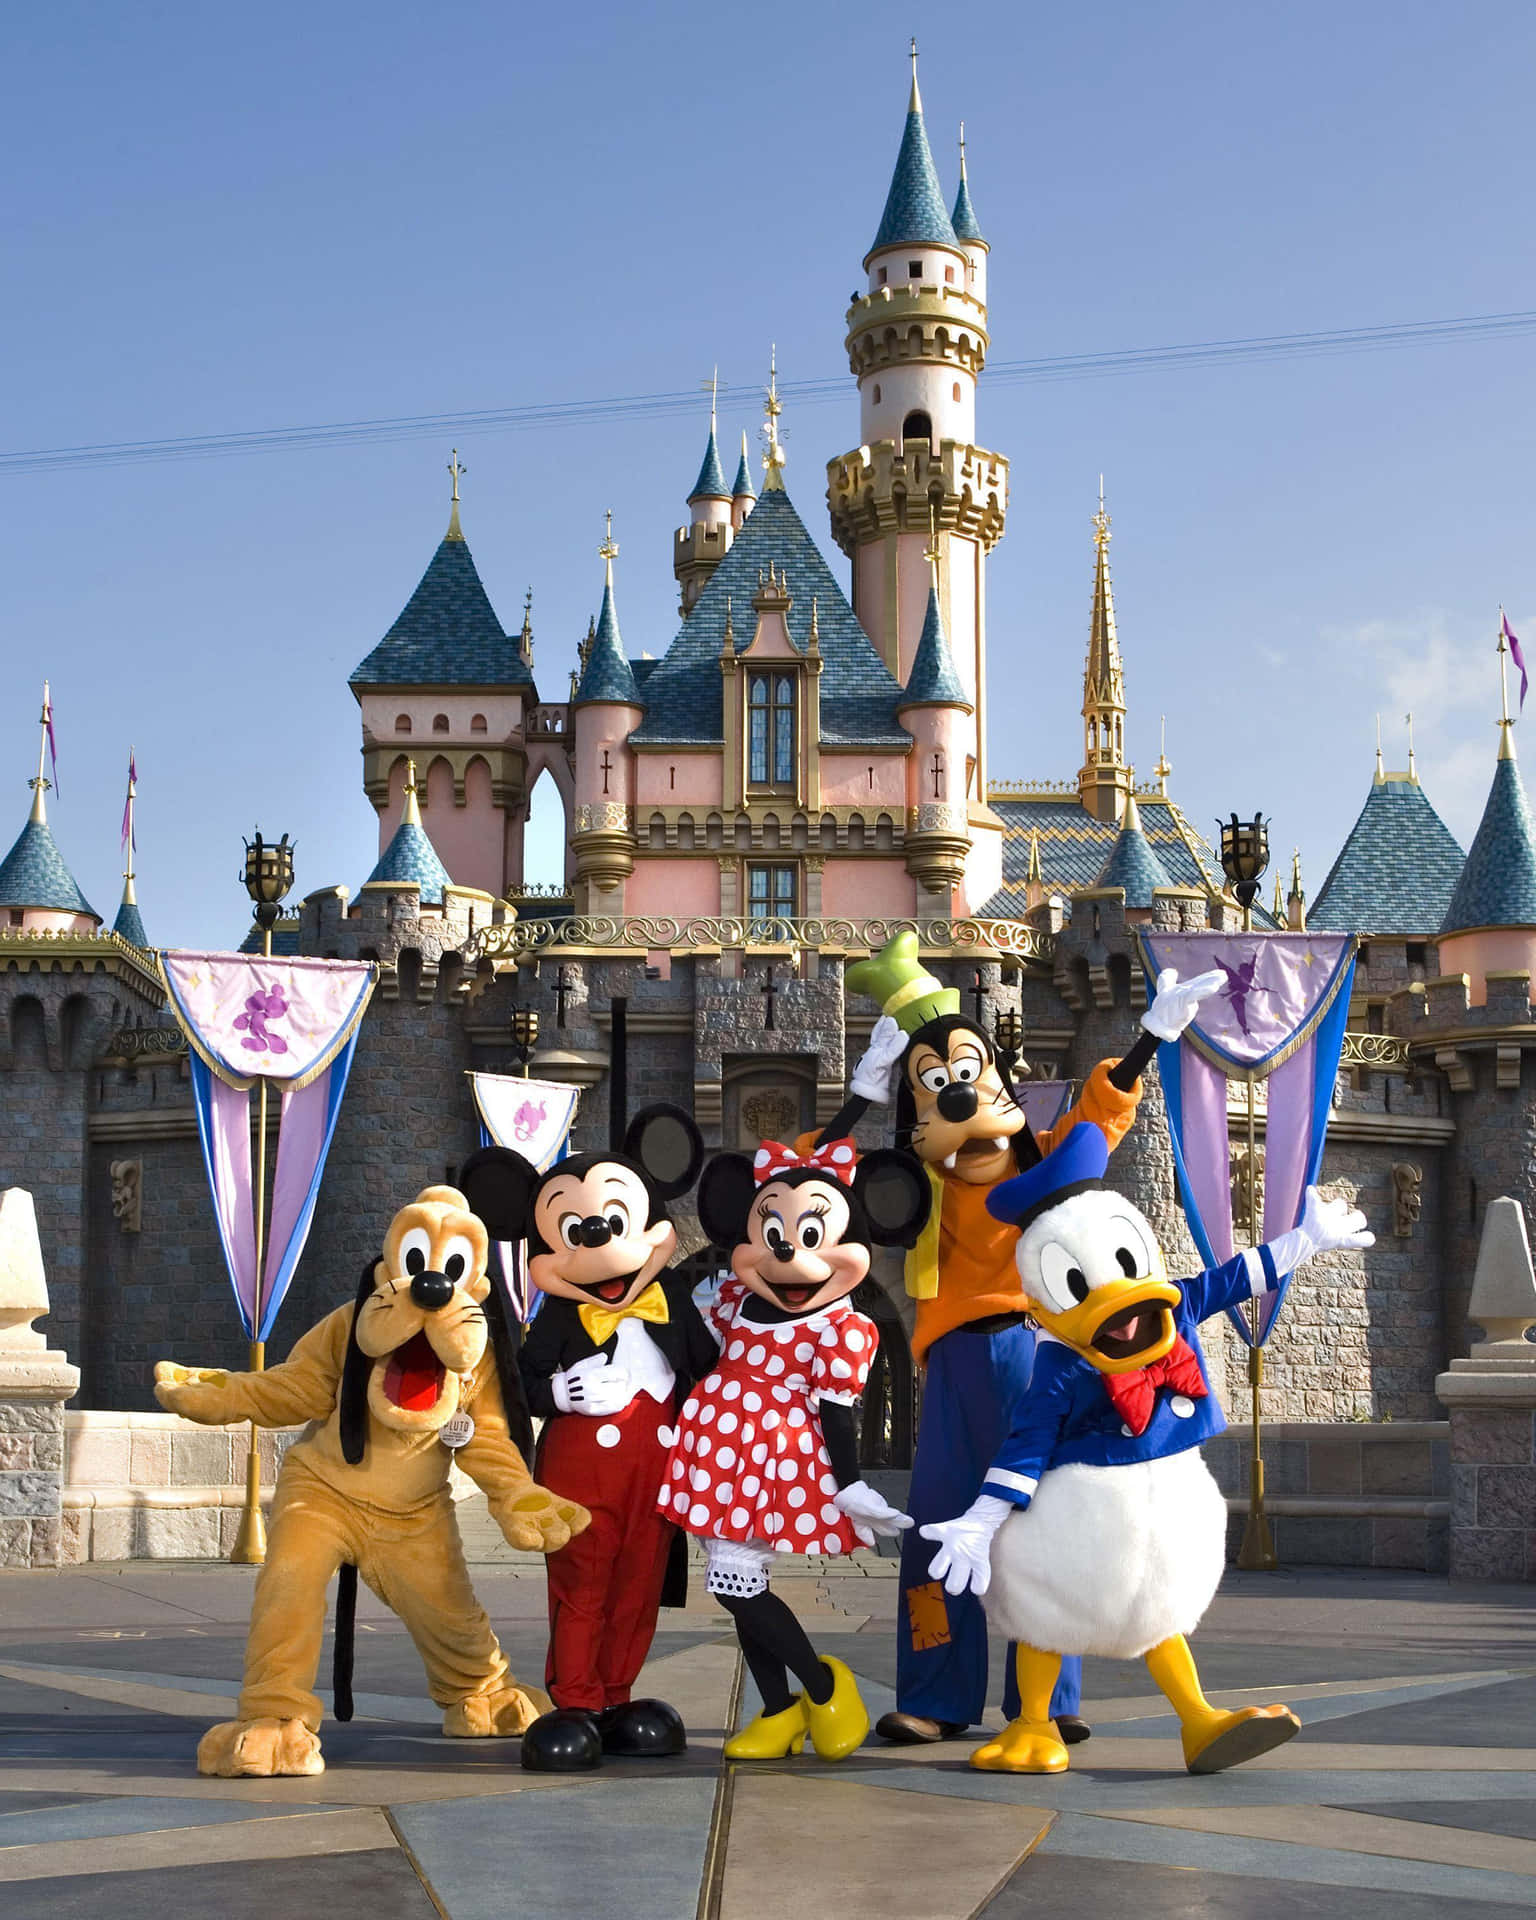 Erlebedie Magie Von Disney Im Disneyland!